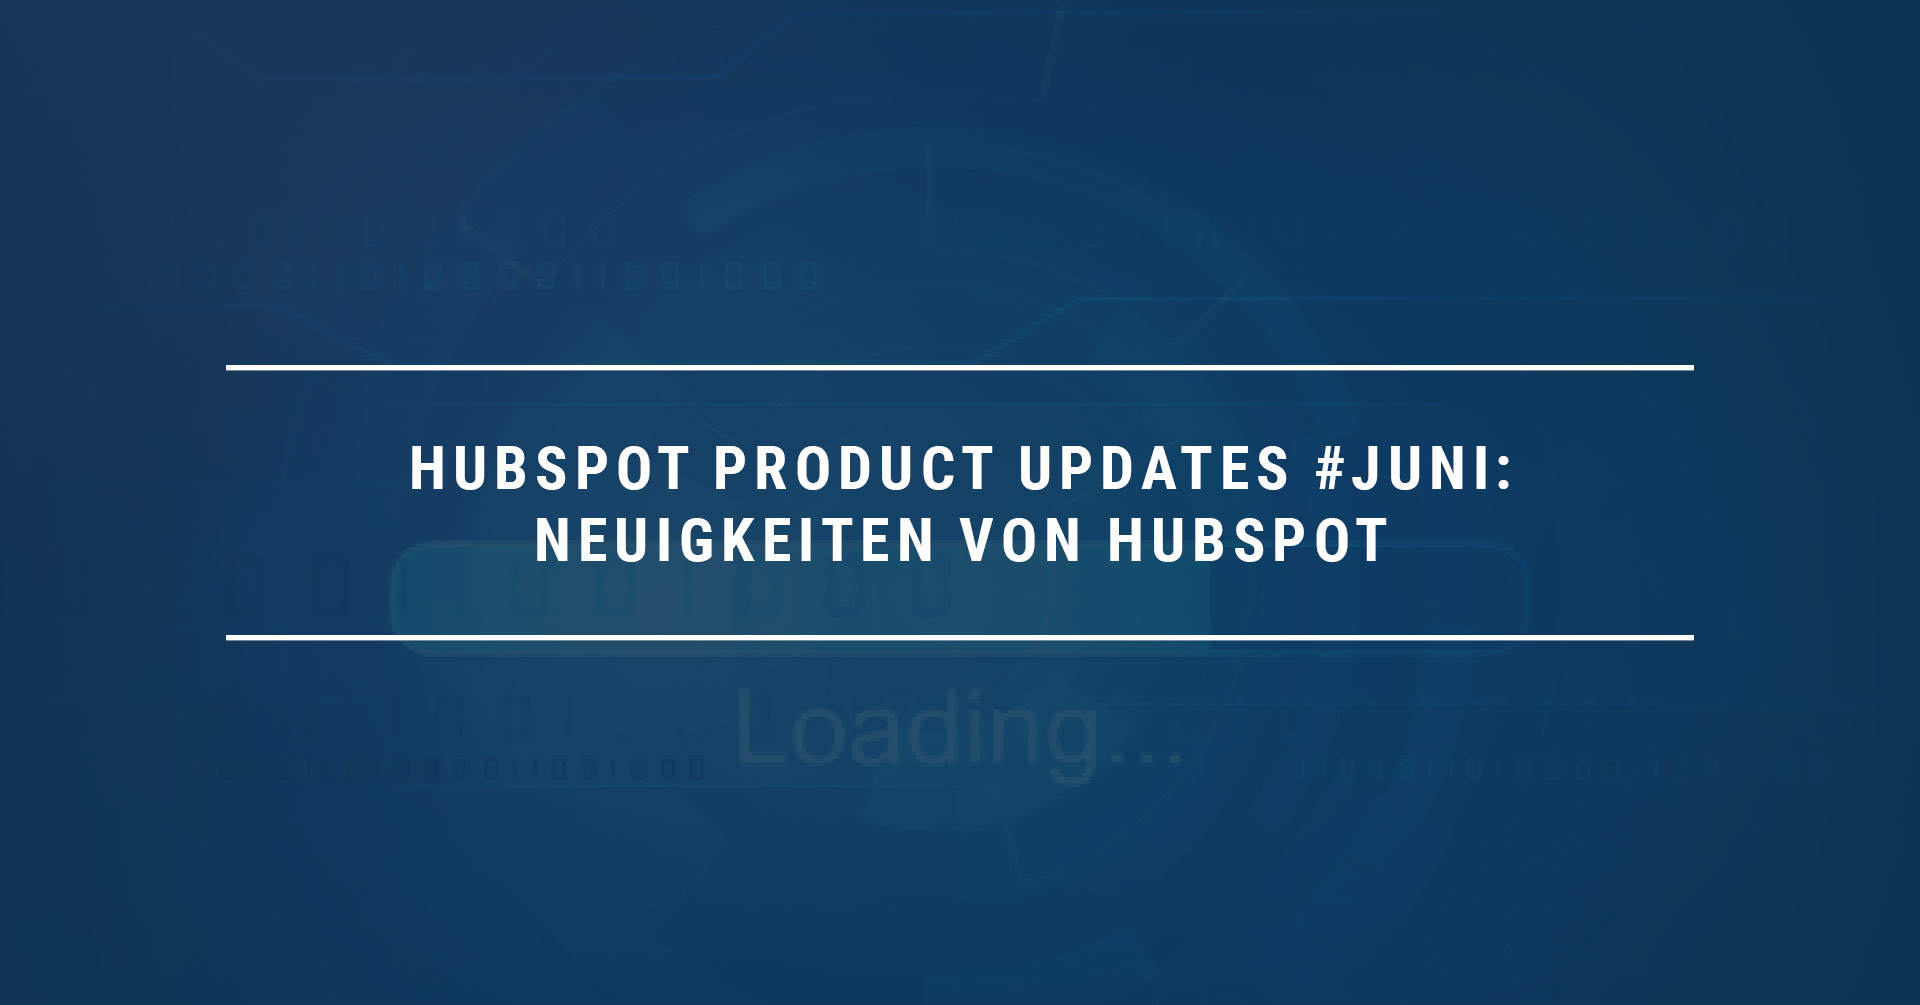 HubSpot Product Updates #Juni21: Neuigkeiten von HubSpot